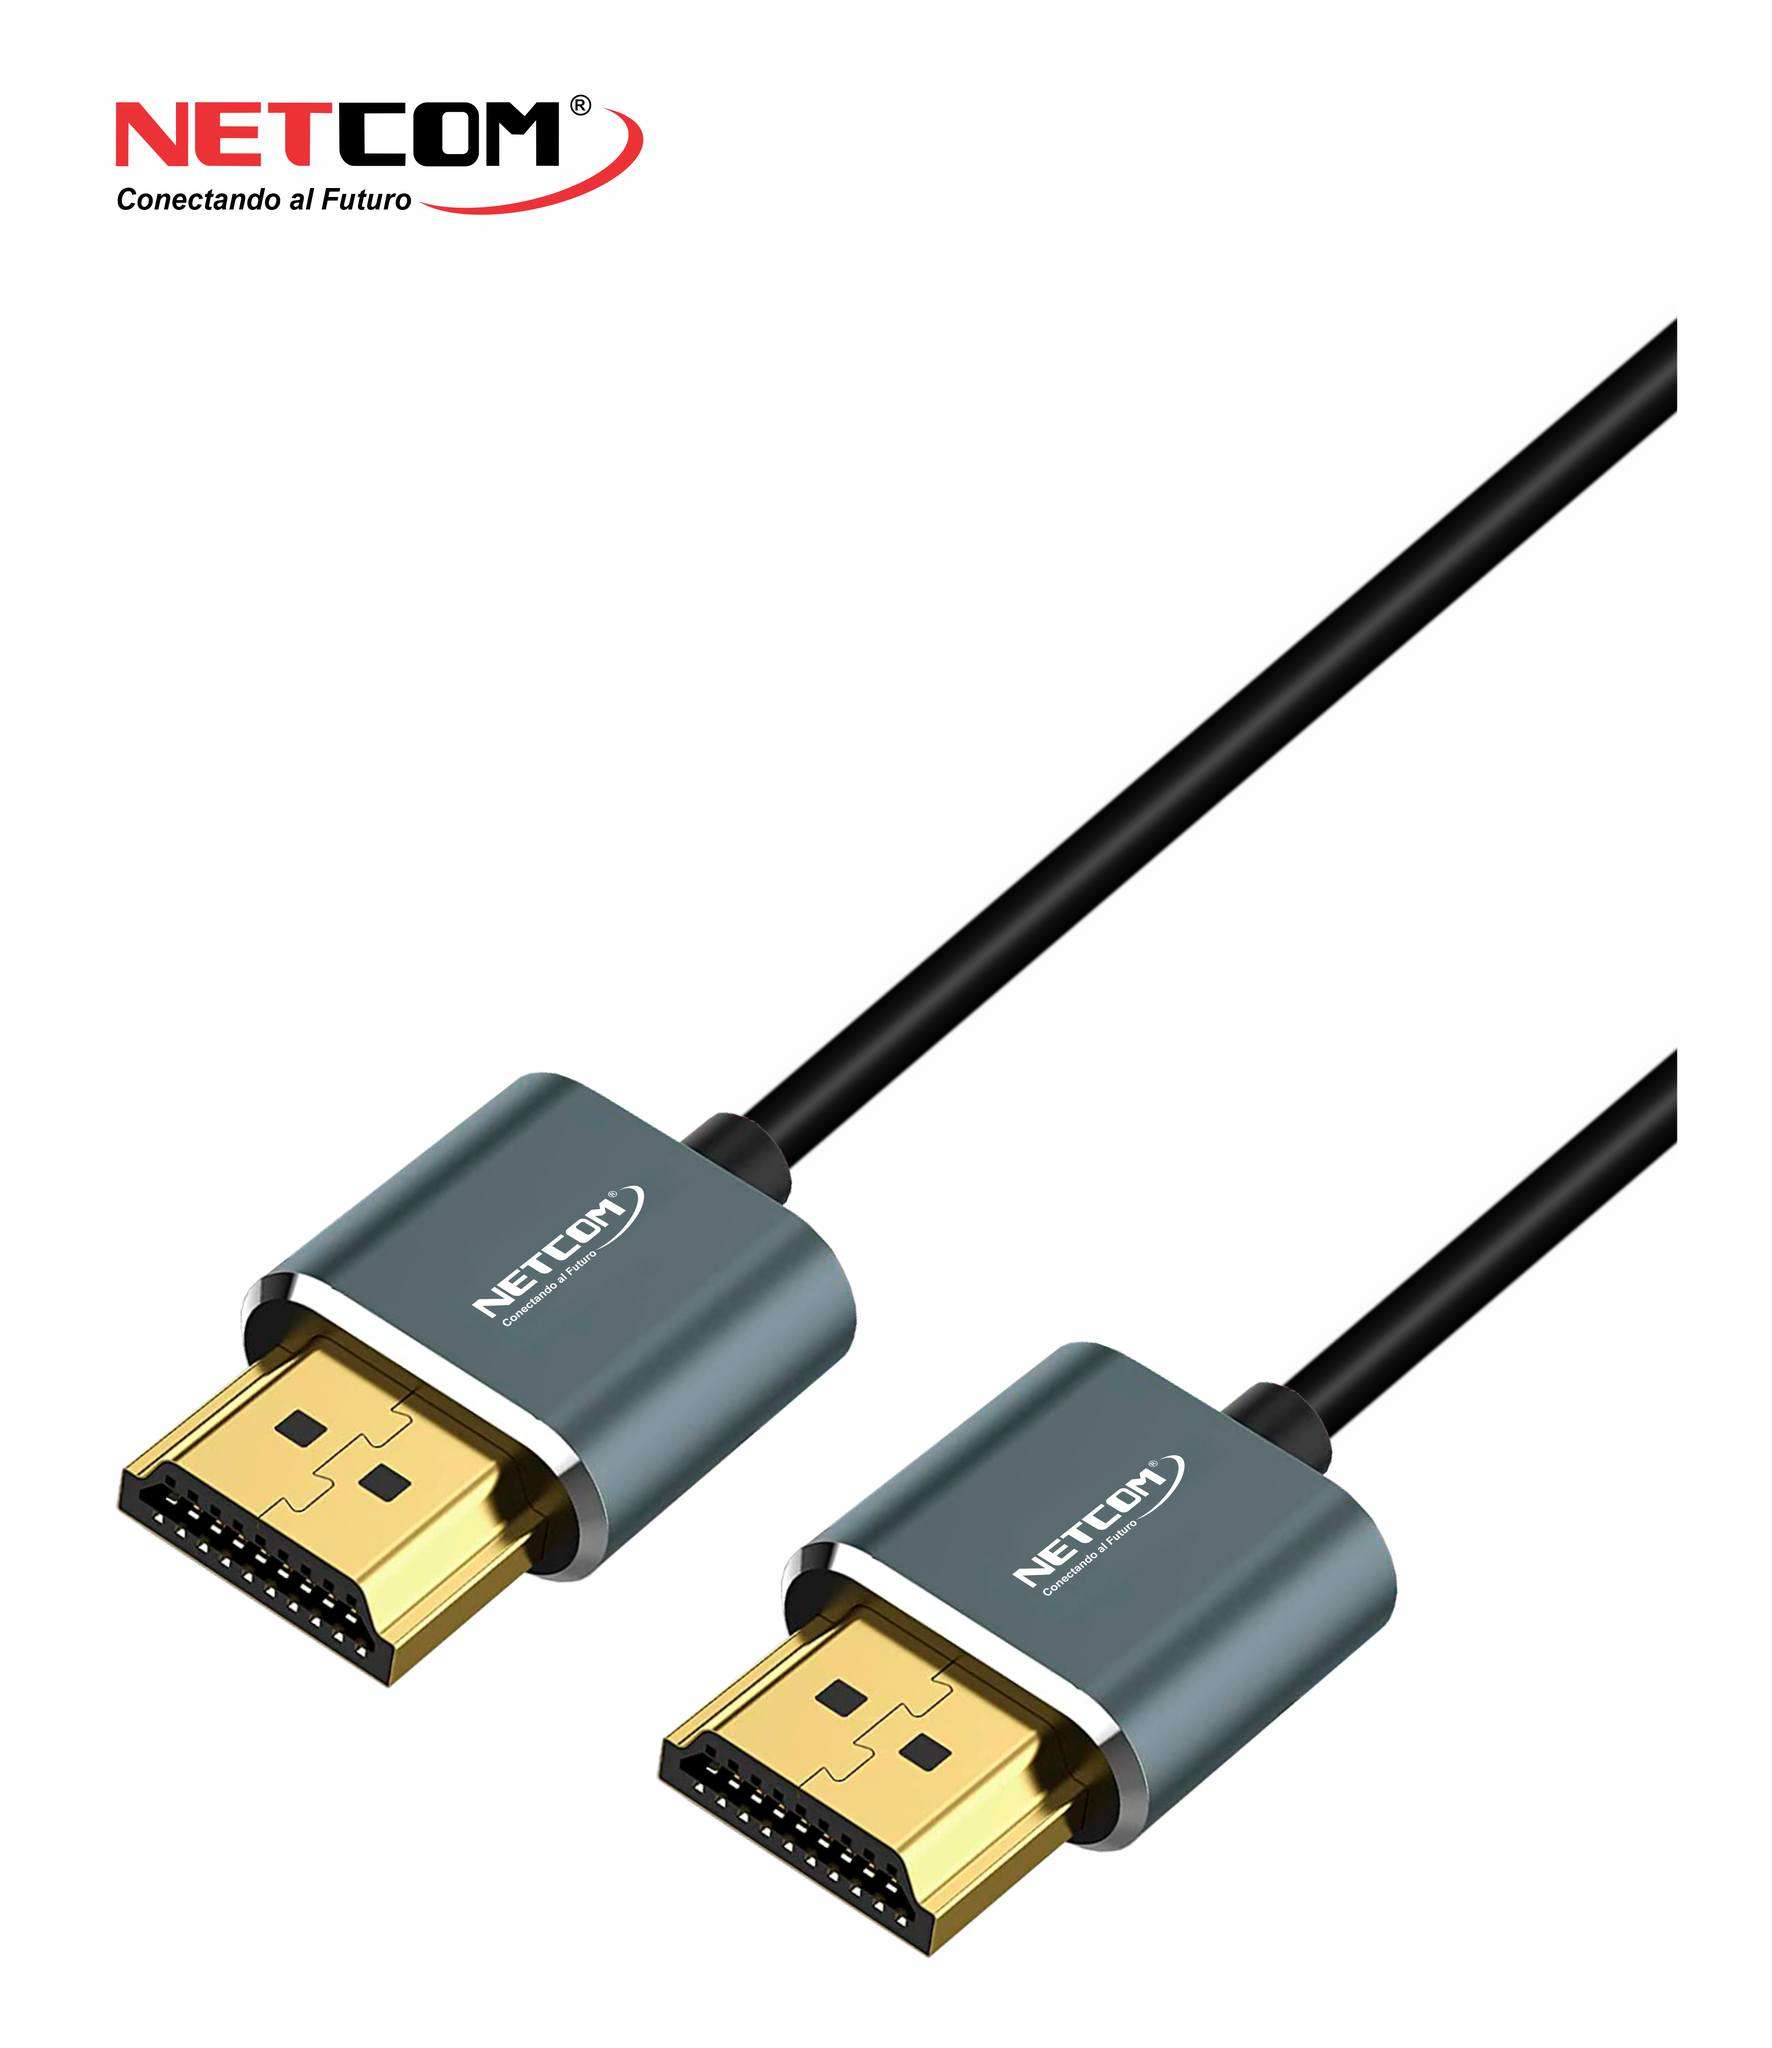 Cable HDMI version 2.0 de 5 metros de longitud UHD 4K – Electronica Cecomin